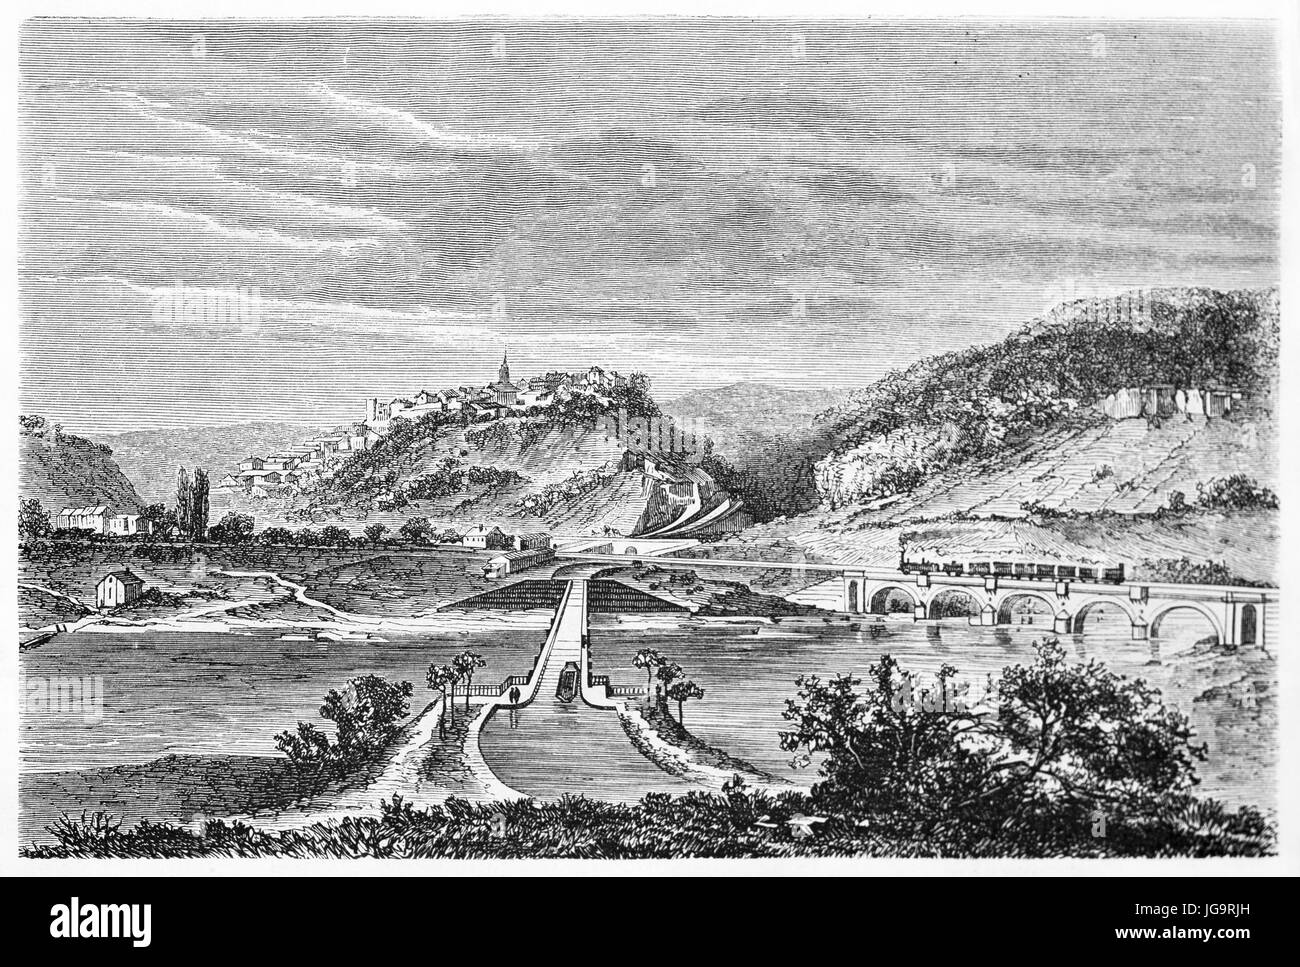 Canal et chemin de fer reliant à Liverdun sur une colline entourée d'un vaste paysage naturel, la France. Art de style gravure par Lancelot, 1861 Banque D'Images